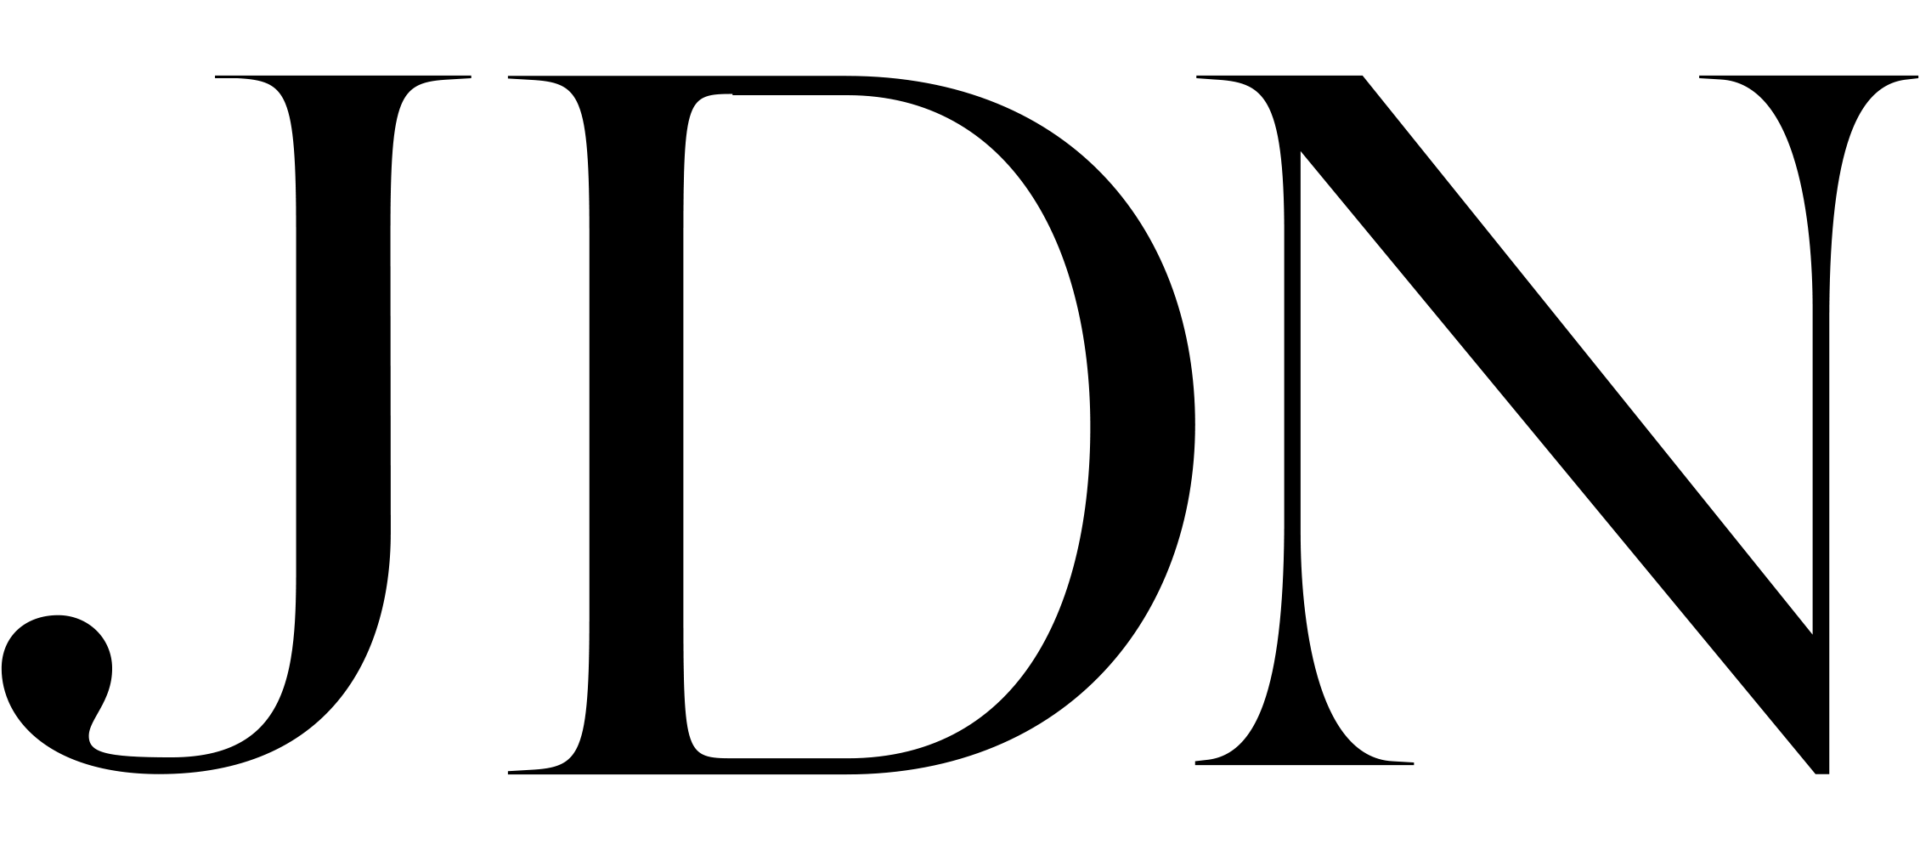 Il logo di Xandr